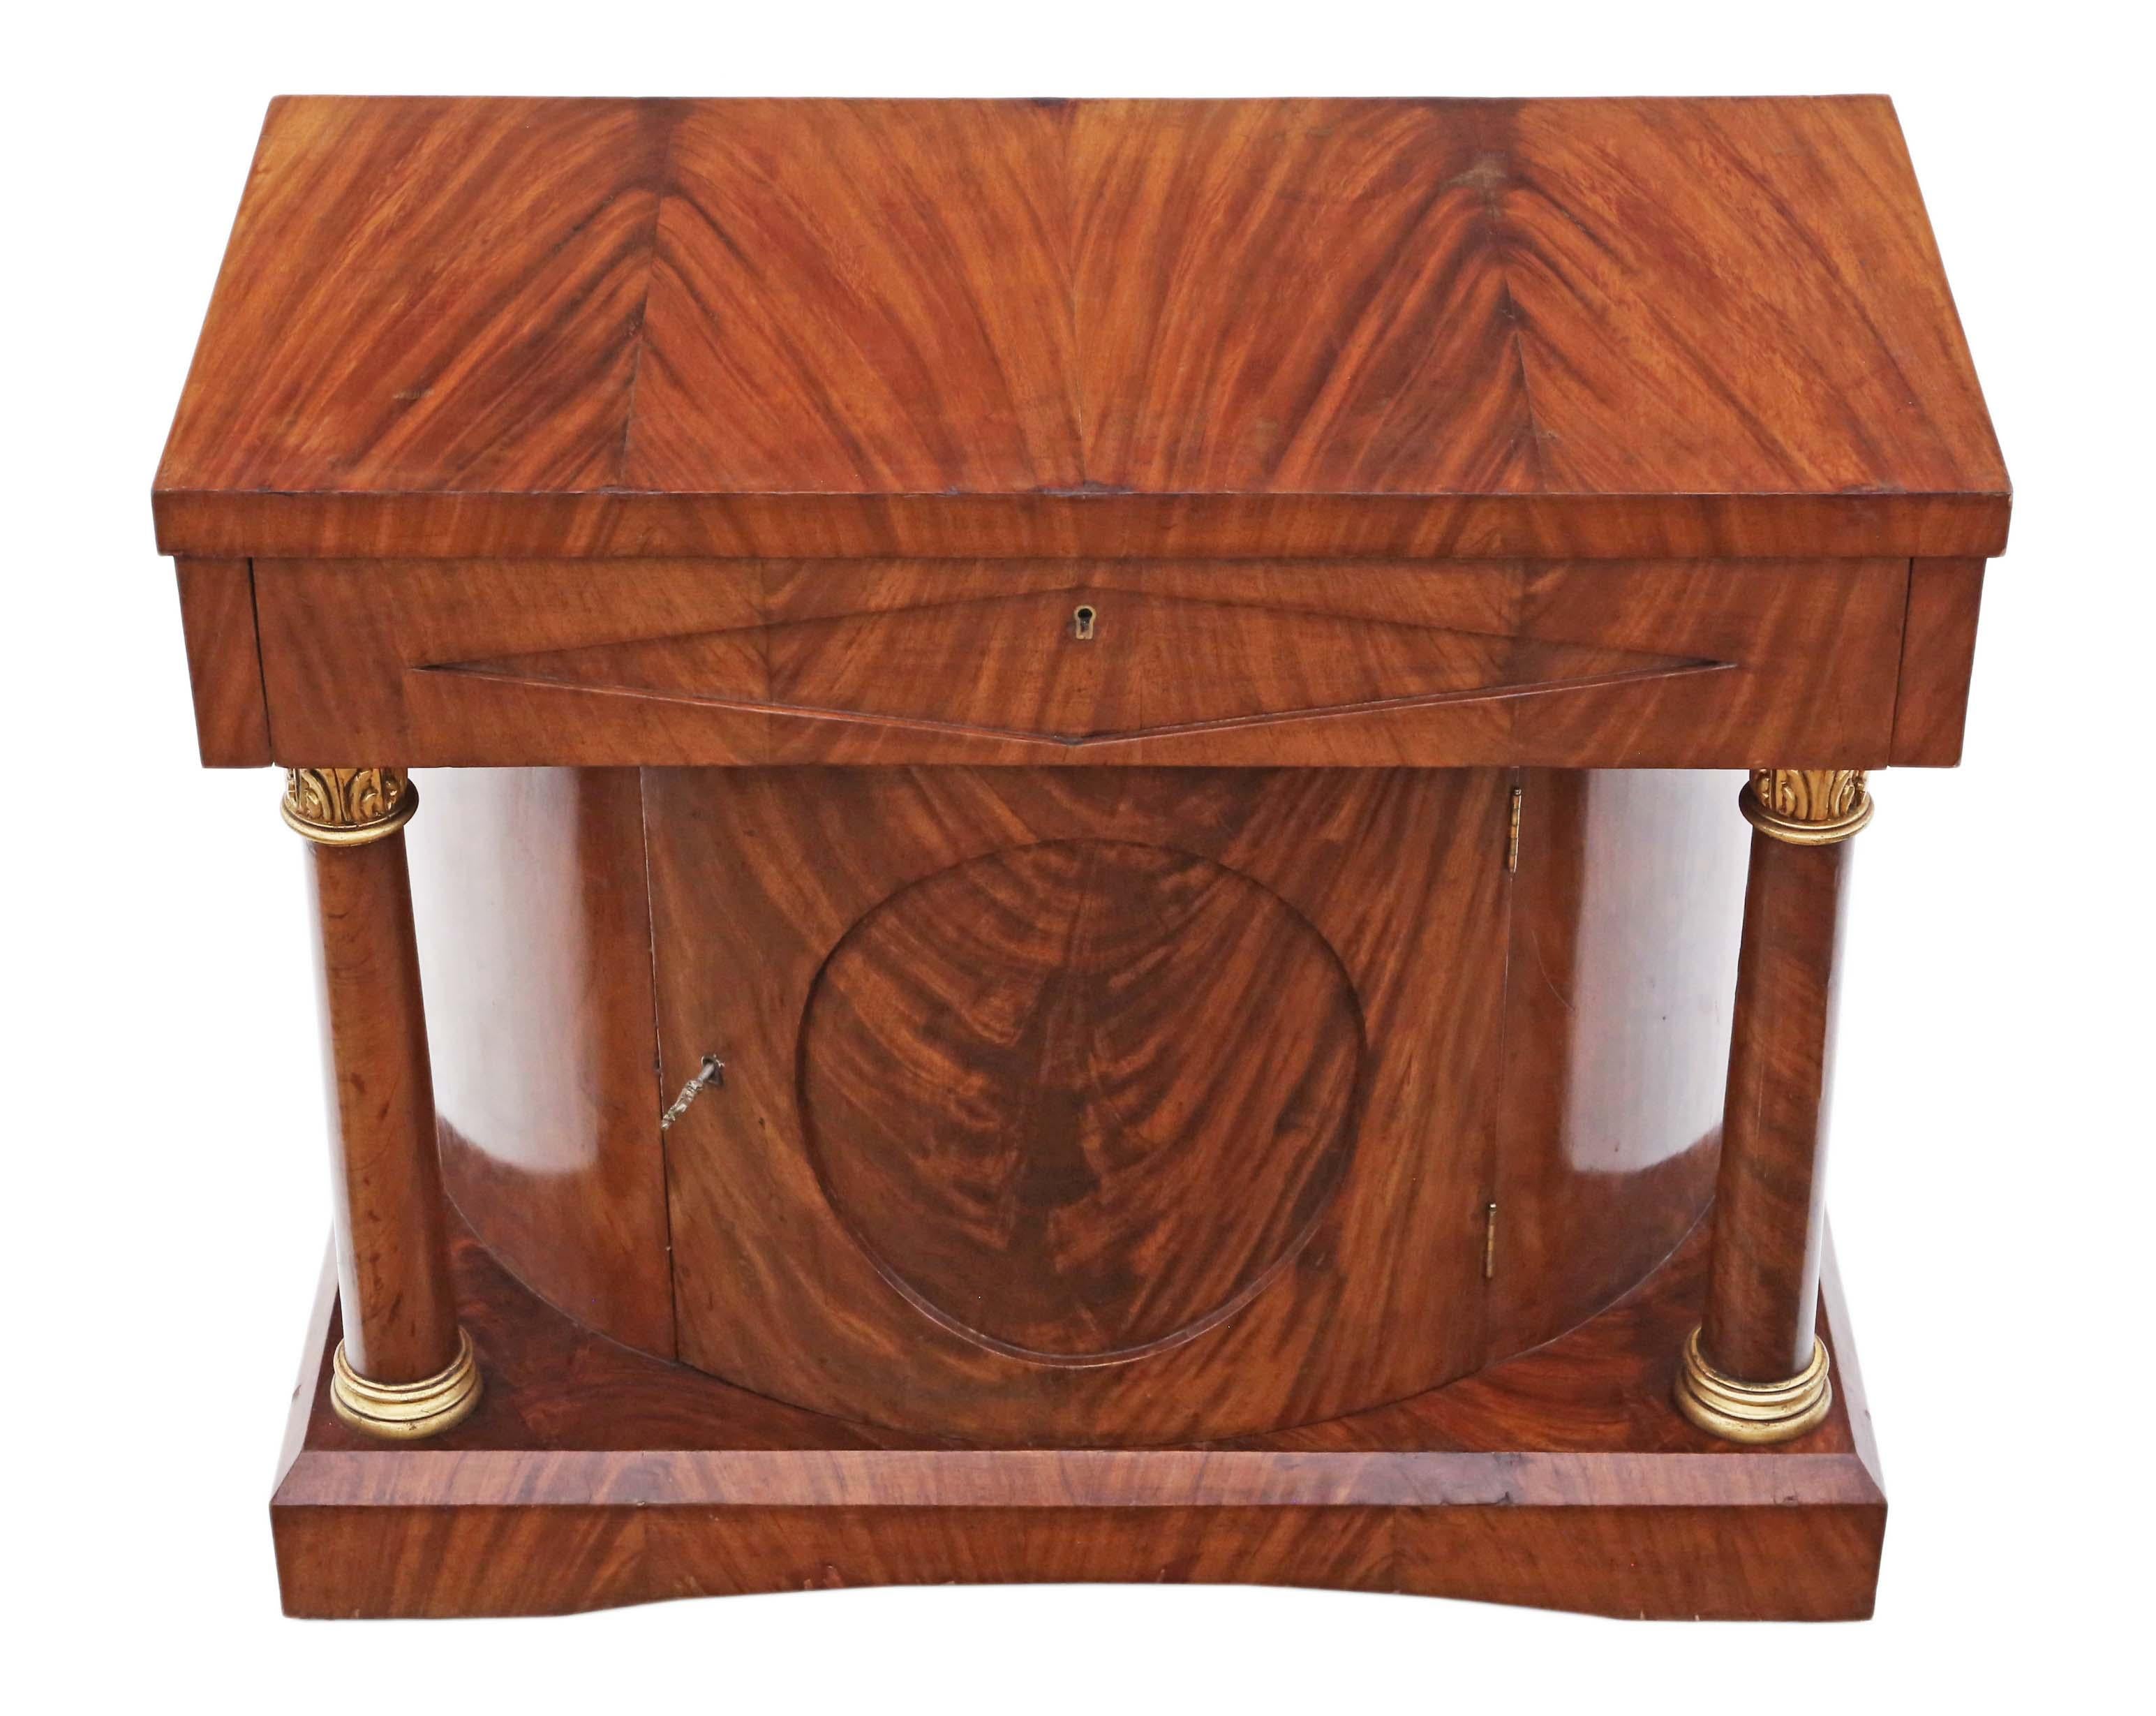 Table console de style néo-Regency en acajou de qualité antique, datant de 1920.

Pas de joints lâches. Une trouvaille décorative rare avec de beaux pilastres en acajou doré. Clé pour porte d'armoire uniquement.

Il serait parfait dans le bon